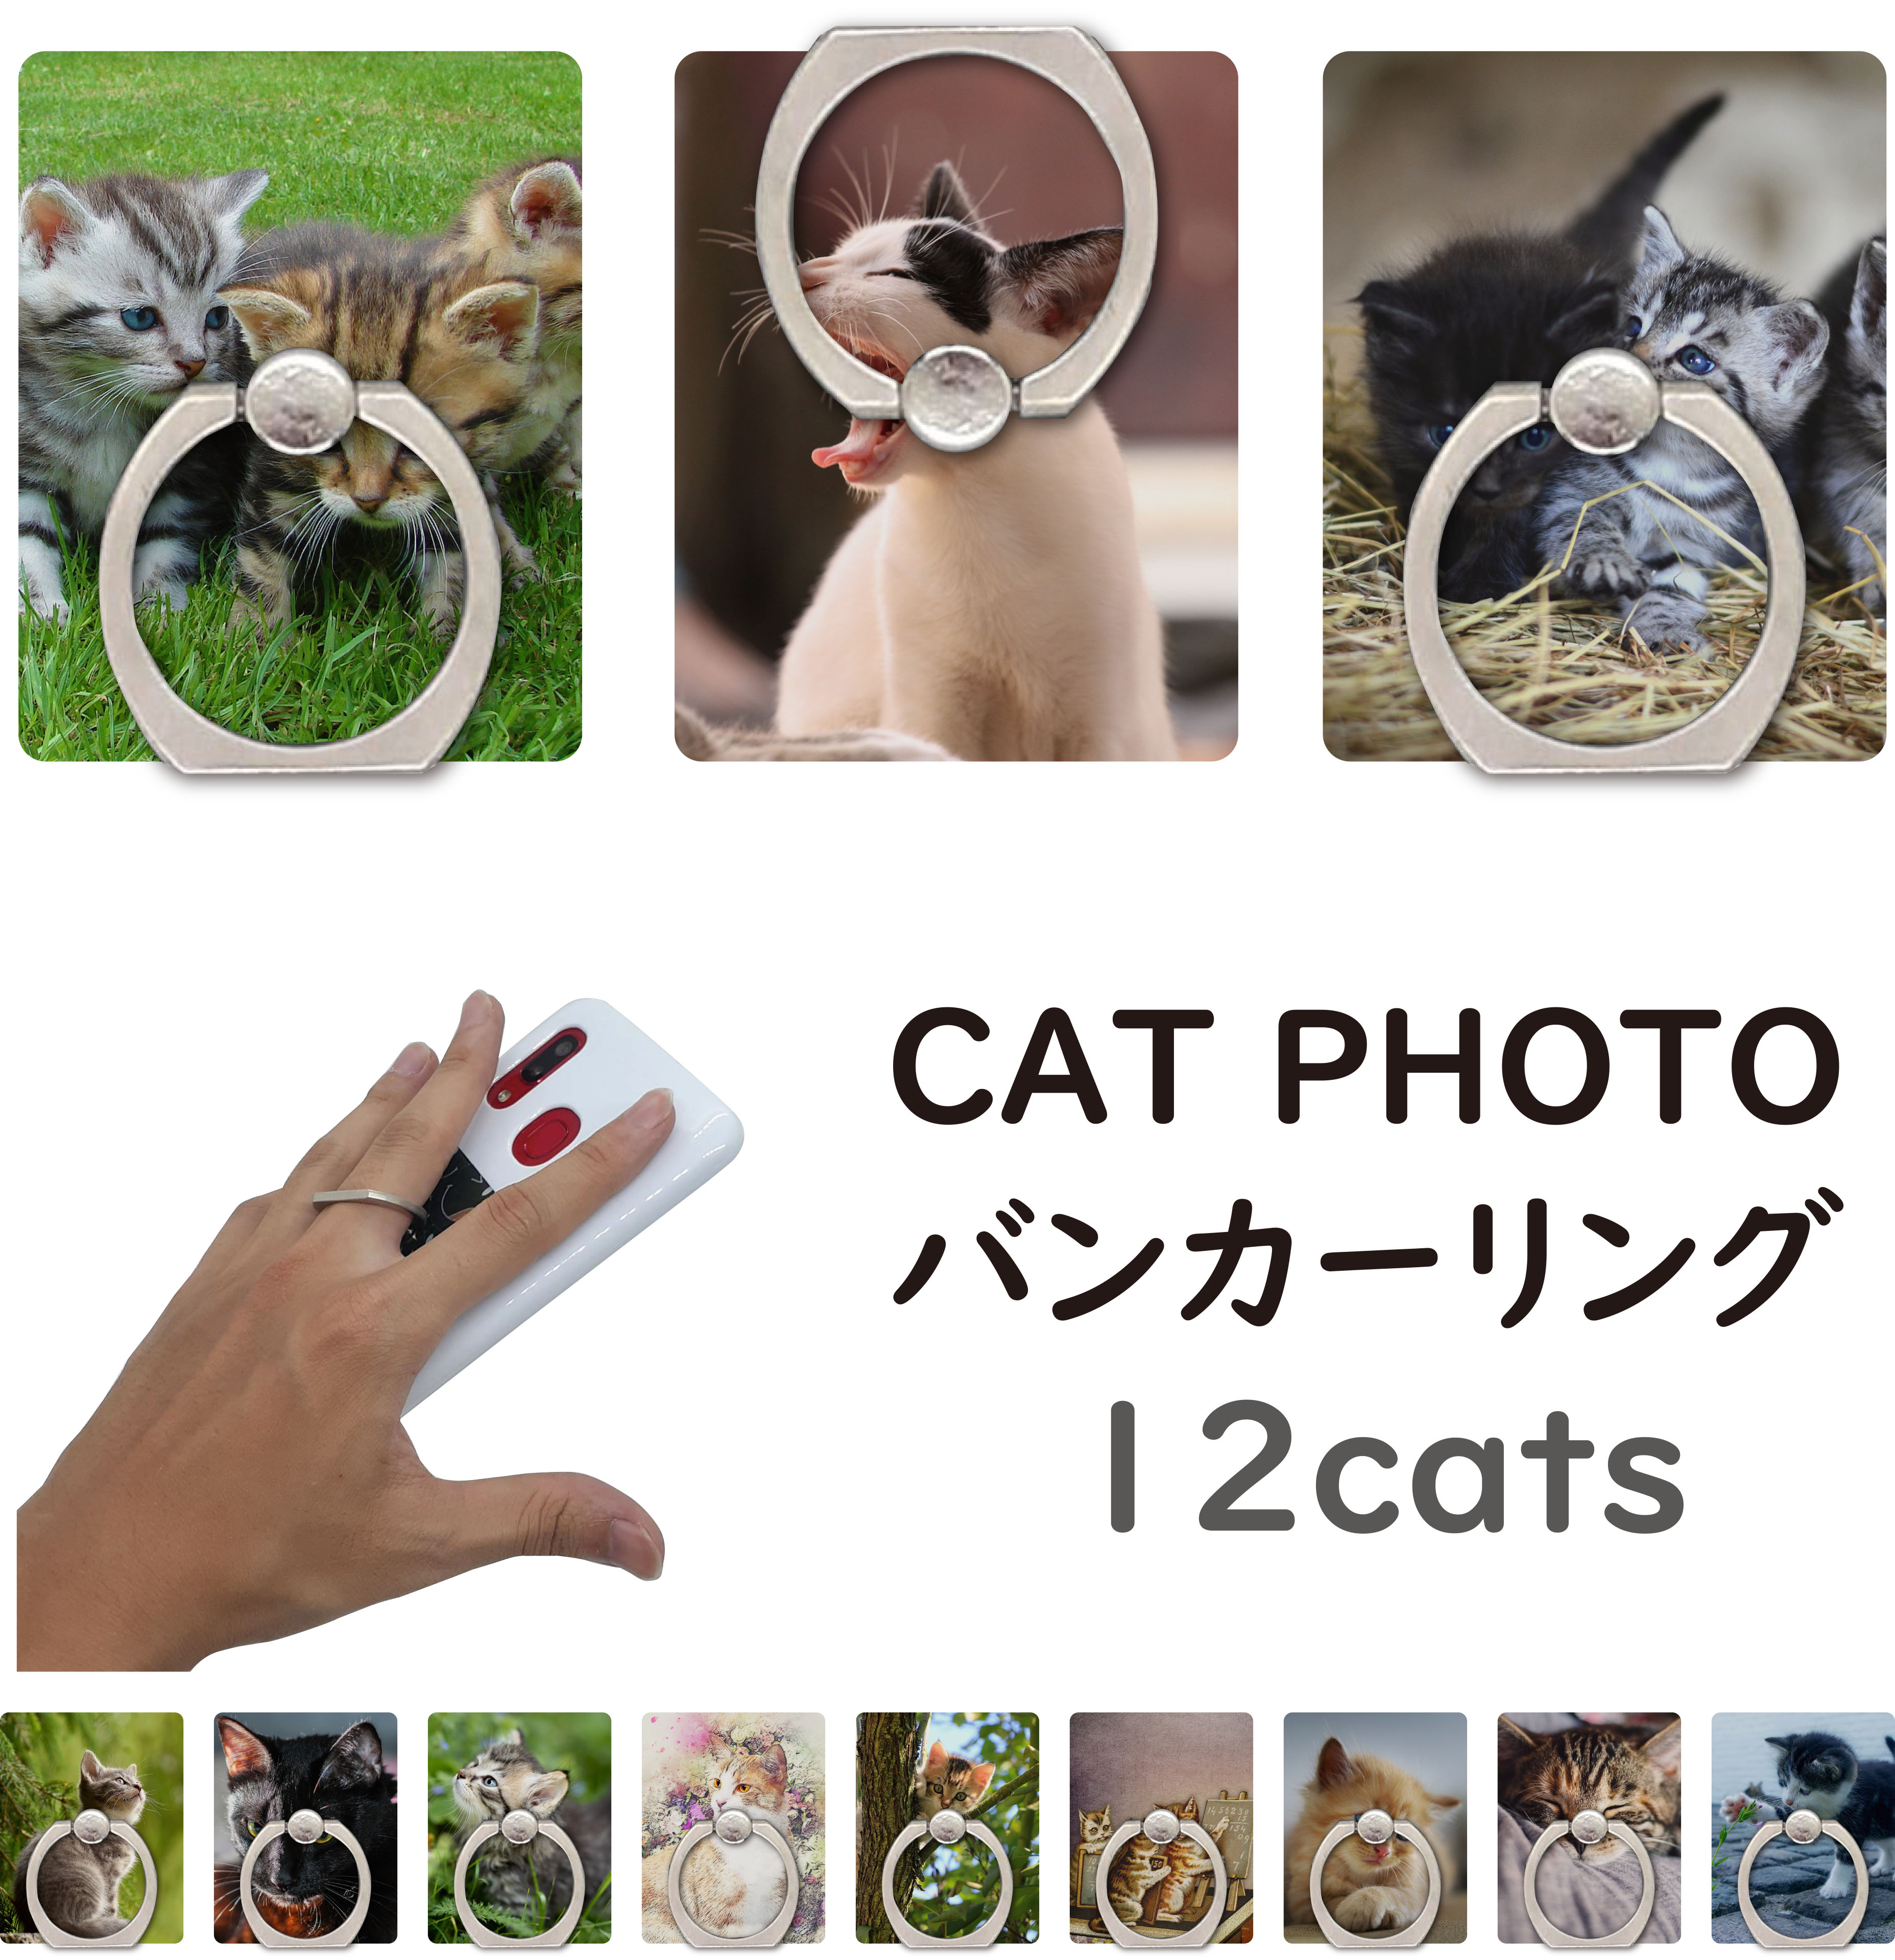 ホルダー バンカーリング 猫 ねこ cat スマホスタンド シンプル iPhone Xperia Galaxy AQUOS ARROWS スマホリング 落下防止 スマイル かわいい おしゃれ 流行 人気 売れ筋 カラフル 全機種対応 プレーン 持ち運びラクラク♪